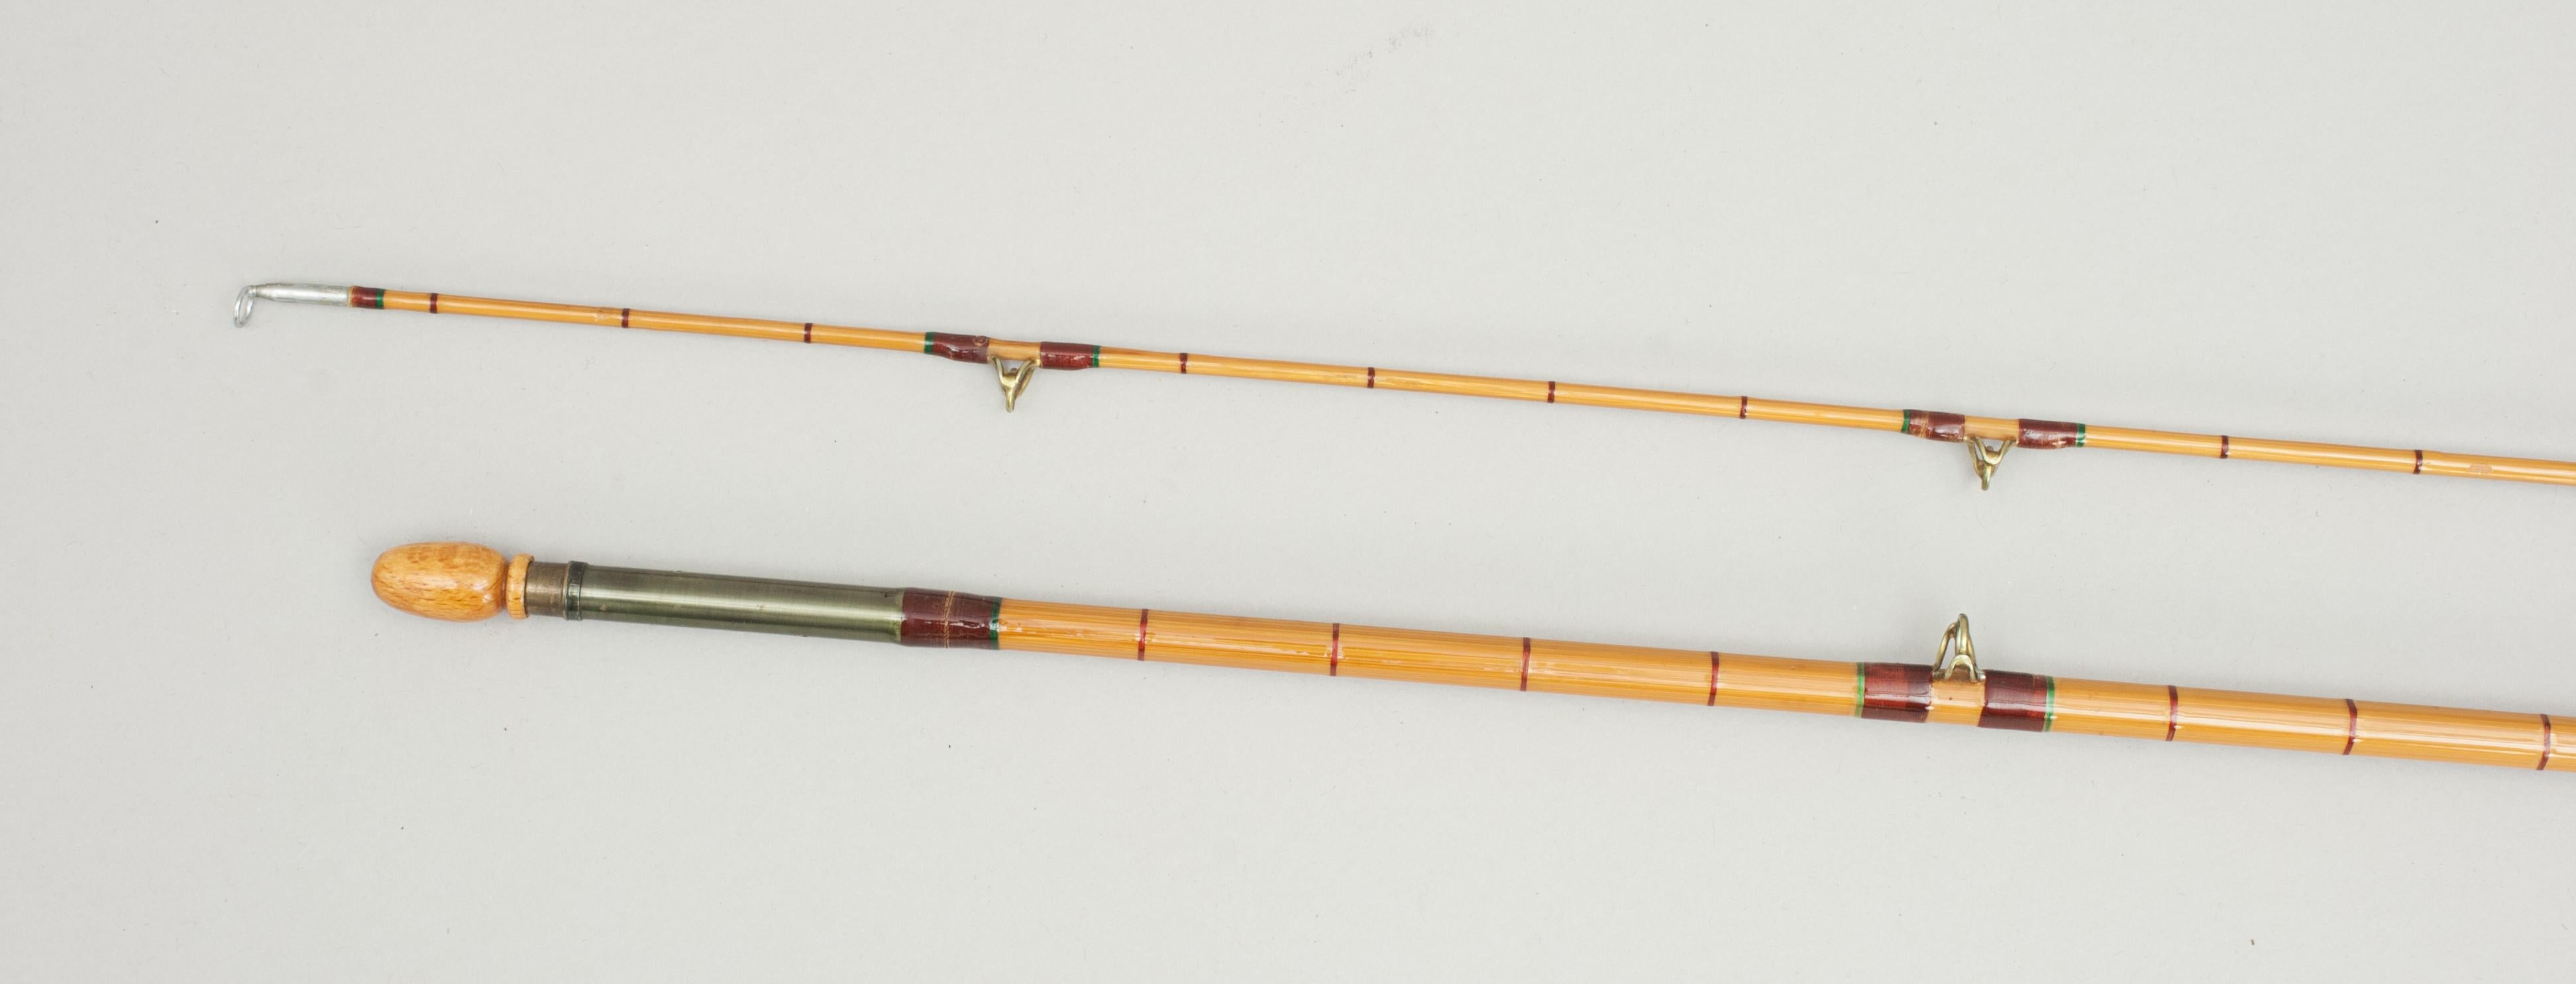 vintage fly rod